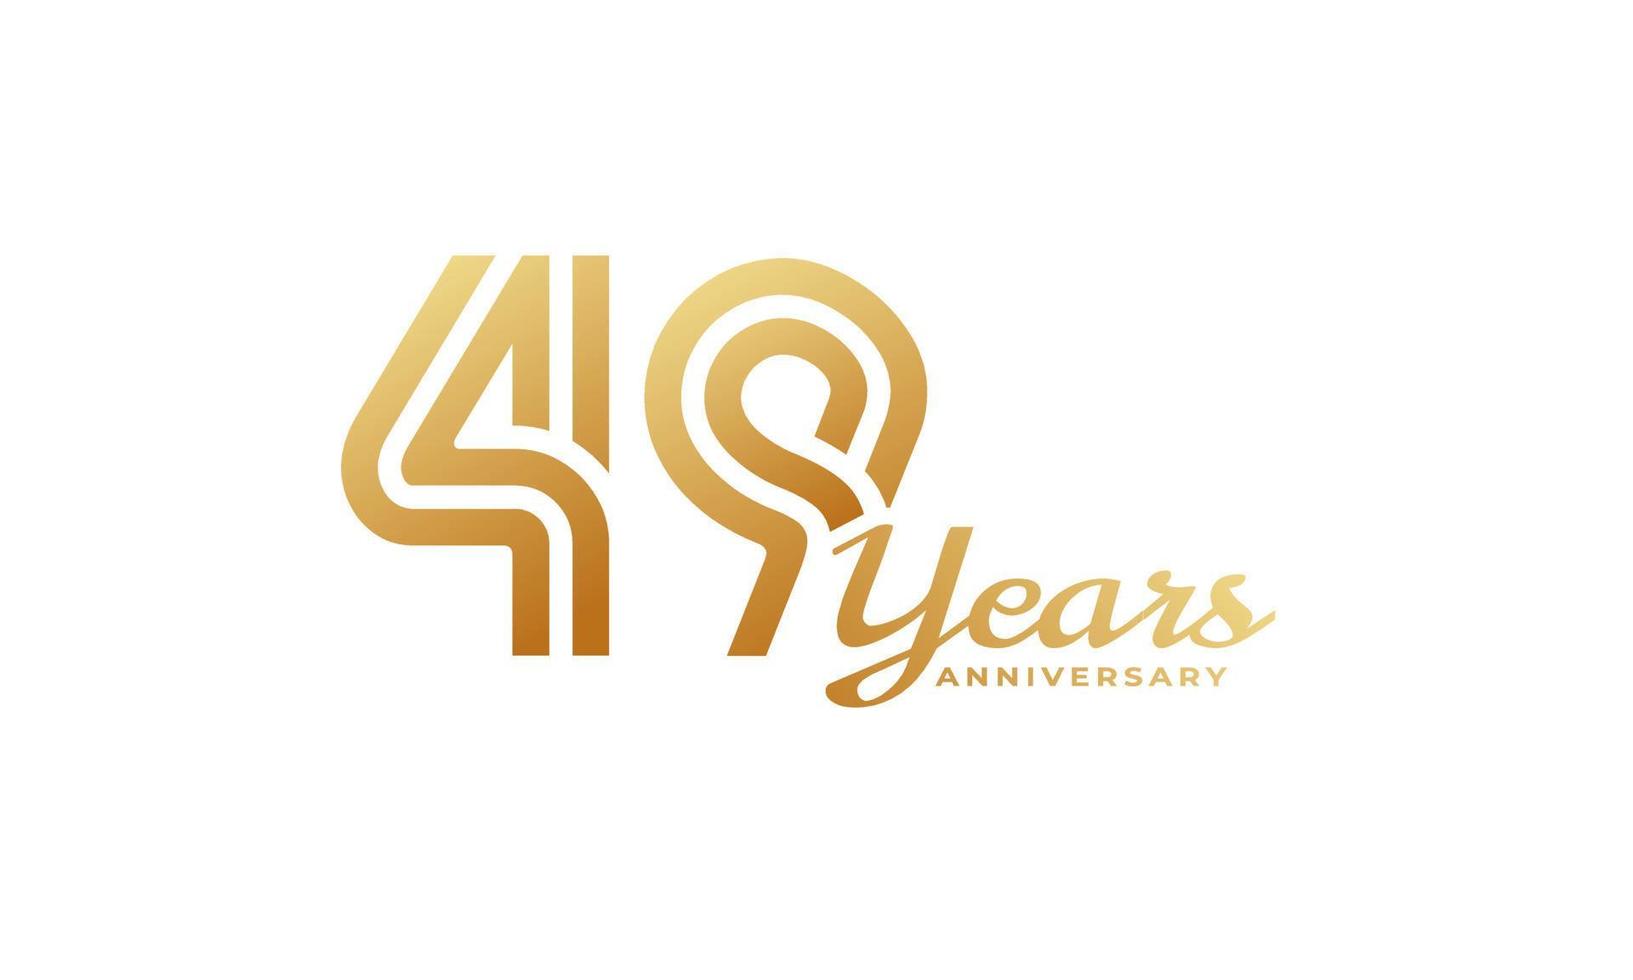 49-jarig jubileumfeest met handschrift gouden kleur voor feestgebeurtenis, bruiloft, wenskaart en uitnodiging geïsoleerd op een witte achtergrond vector